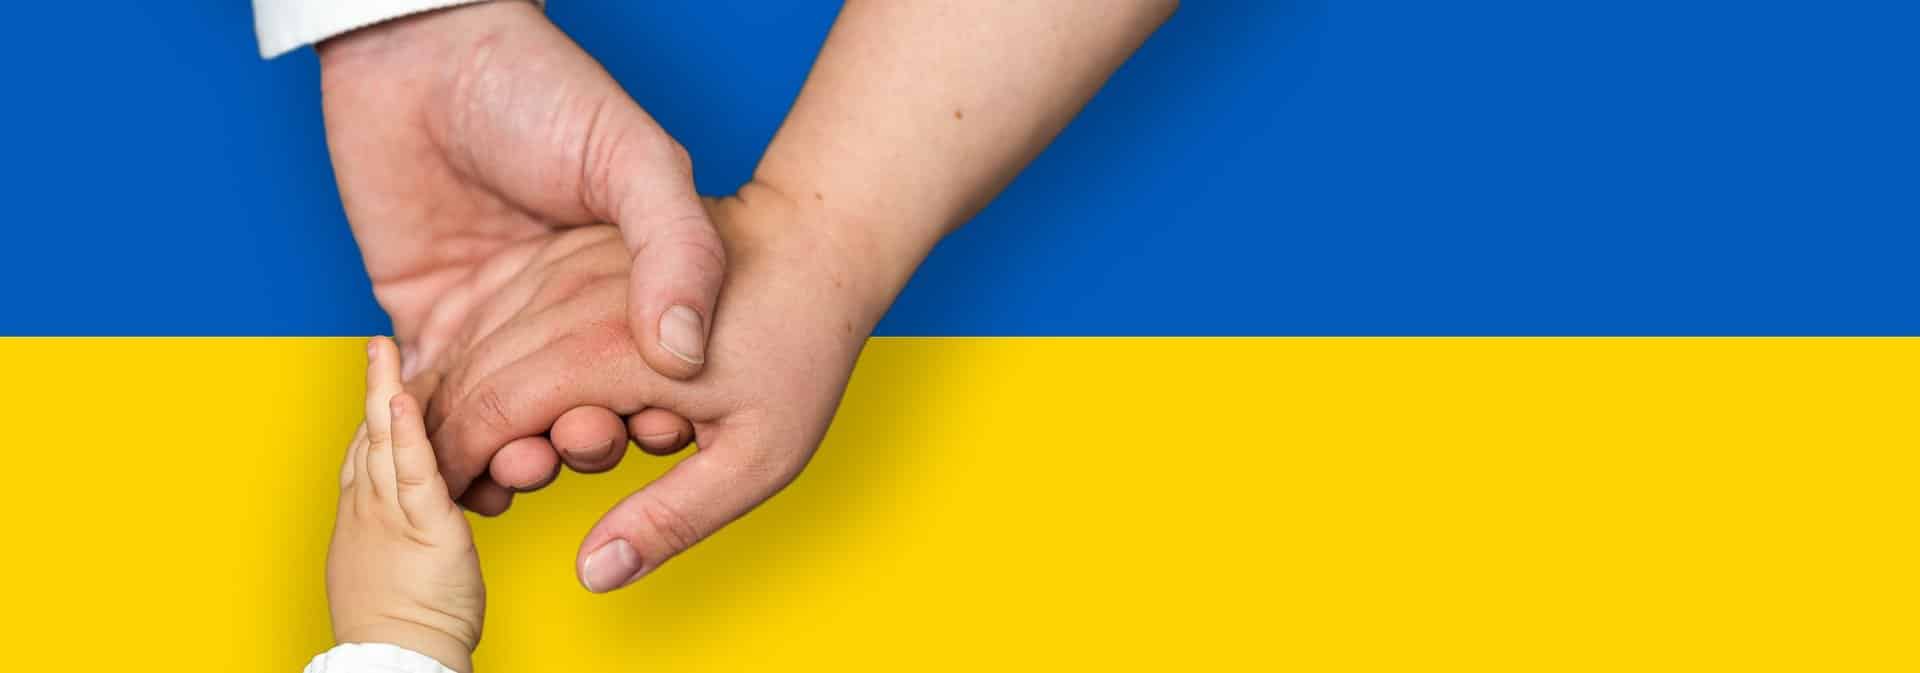 ukrainan lippu, 3 kättä keskellä